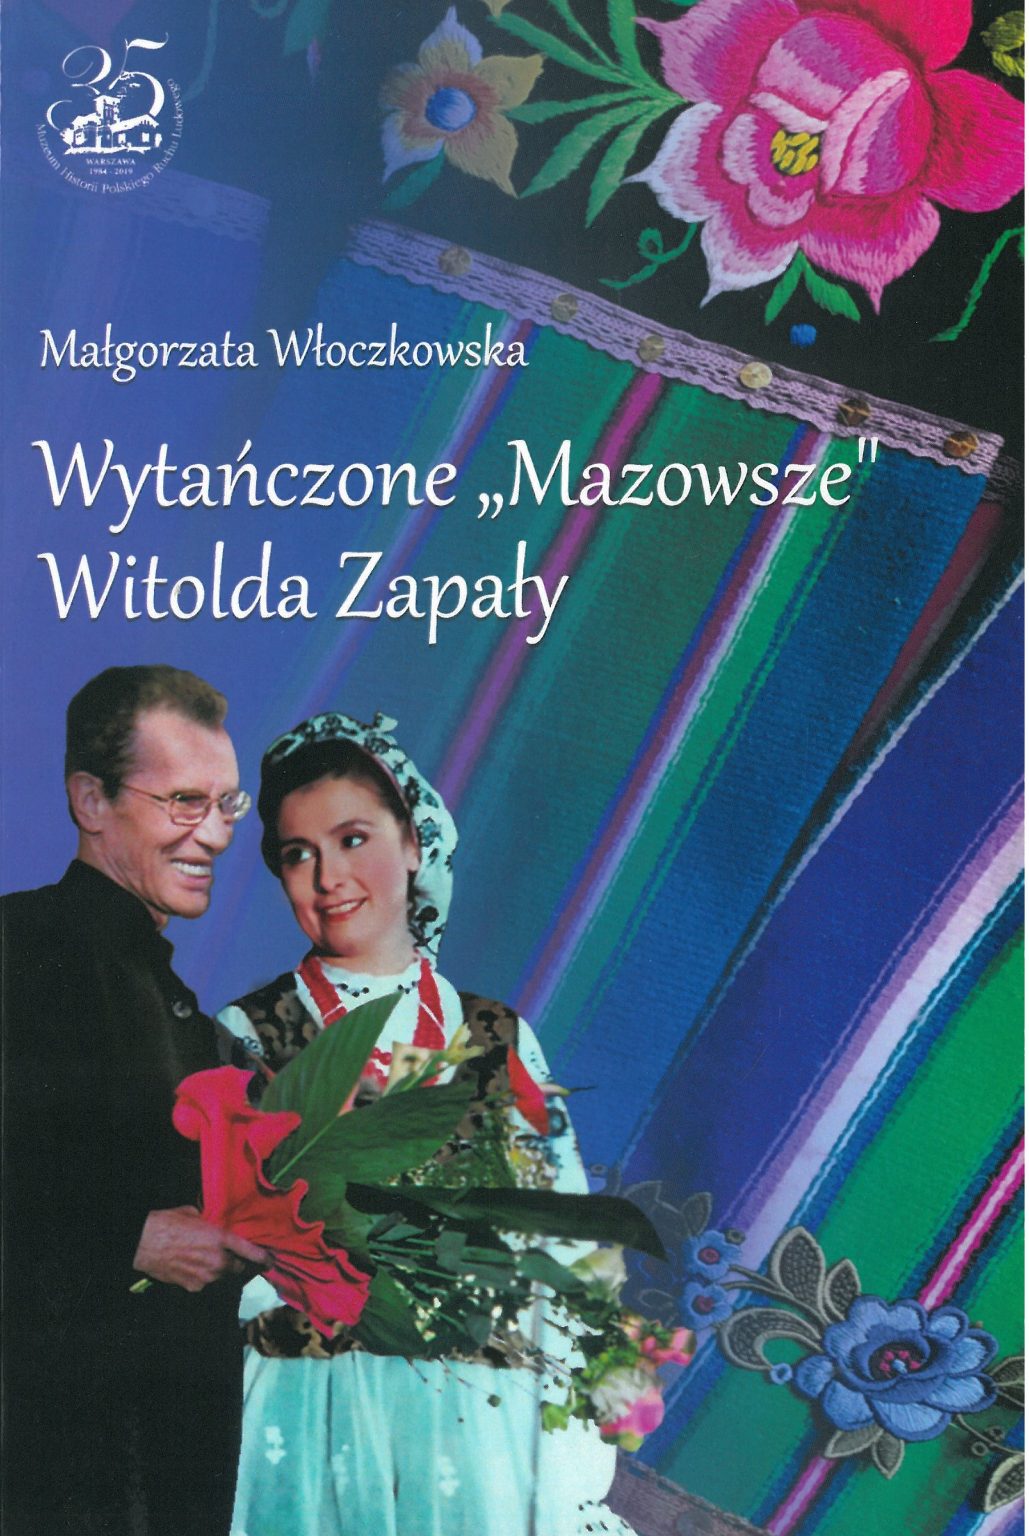 Wytańczone "Mazowsze" Witolda Zapały (M.Włoczkowska)